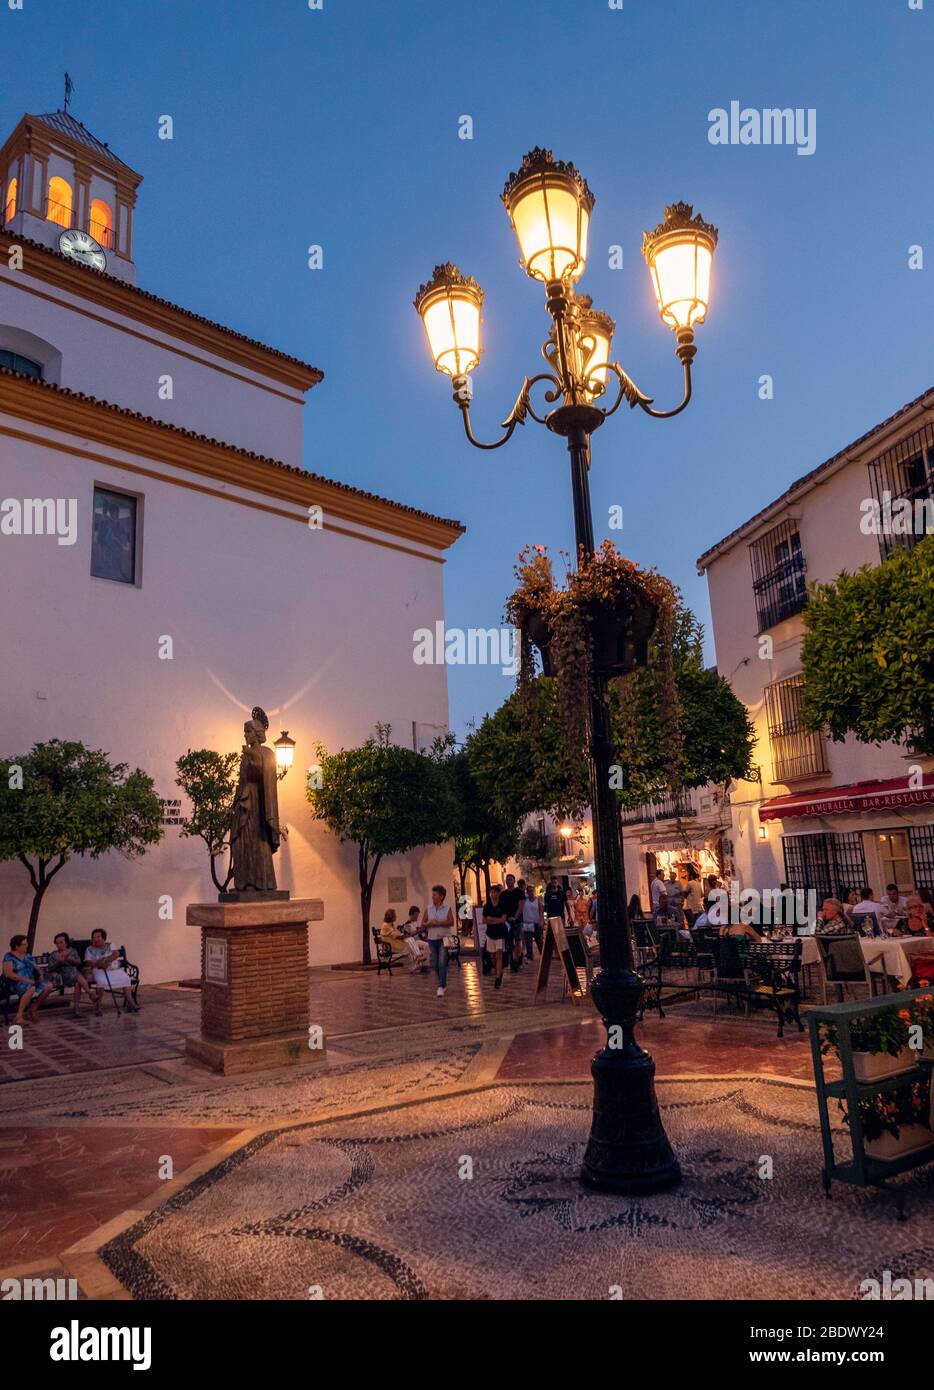 Les gens qui mangent sur une place pavée dans la vieille ville de Marbella, Marbella, Espagne. Banque D'Images